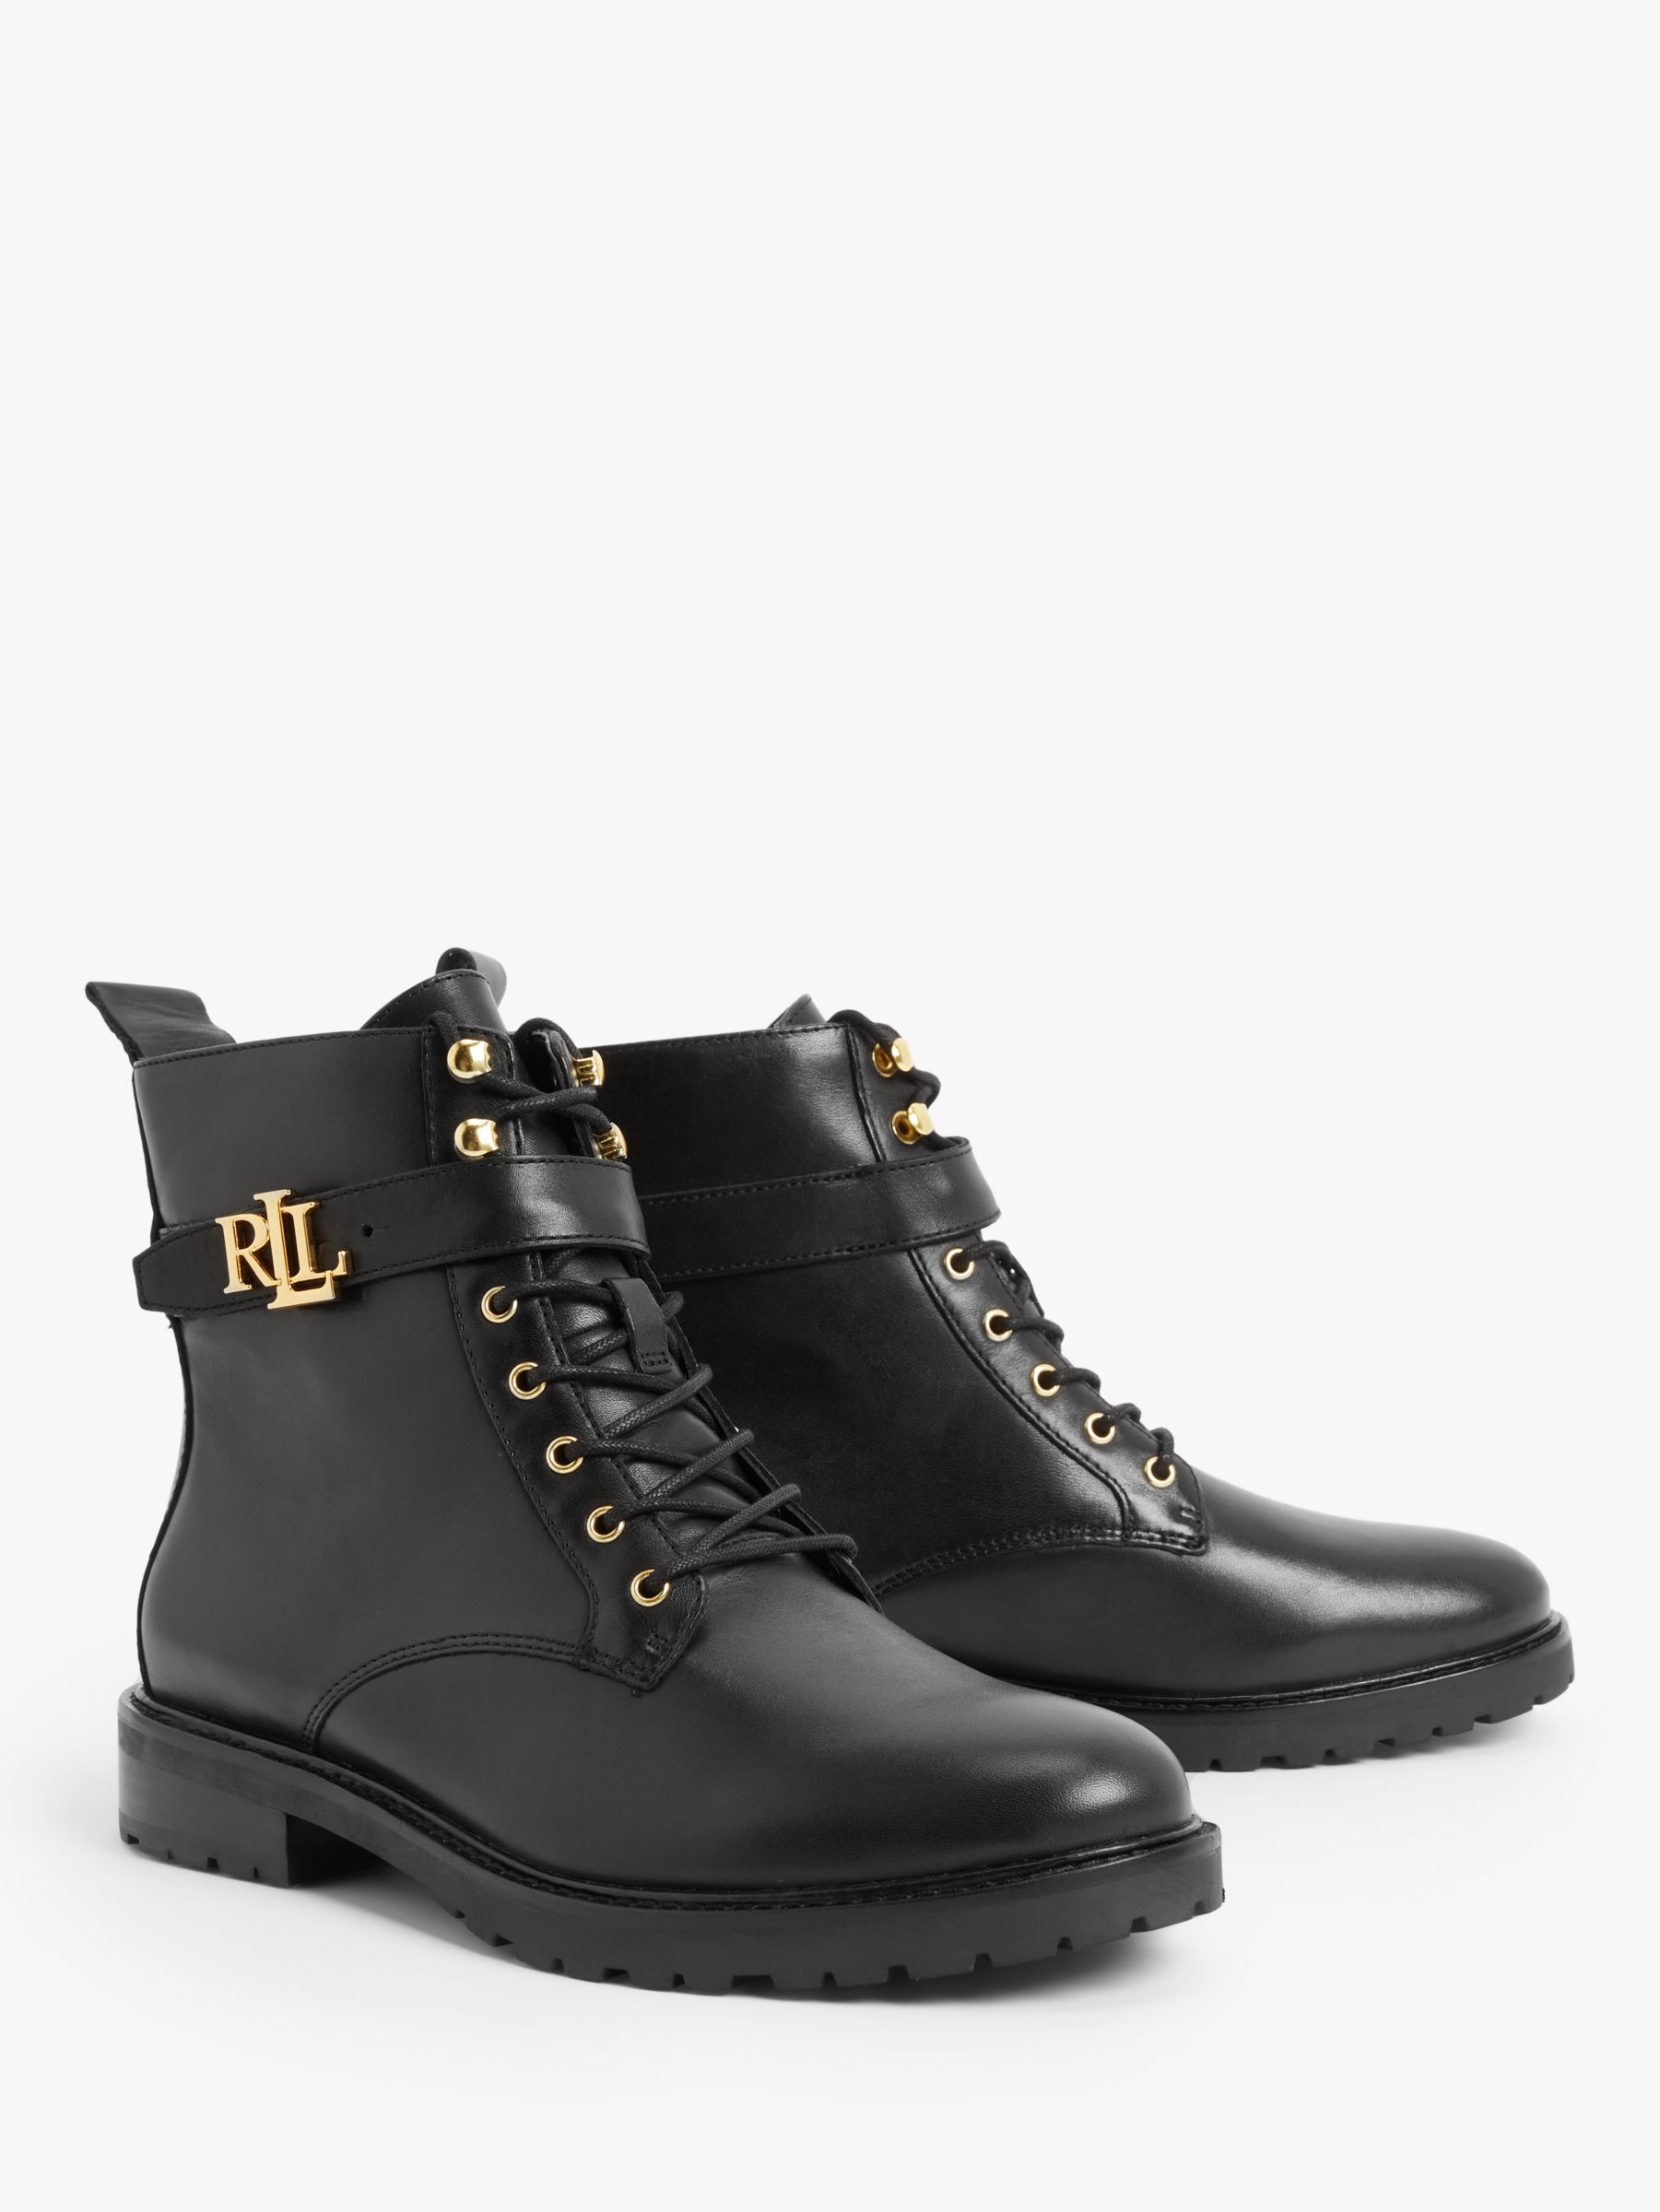 Lauren Ralph Lauren Eldridge Leather Ankle Boots, Black